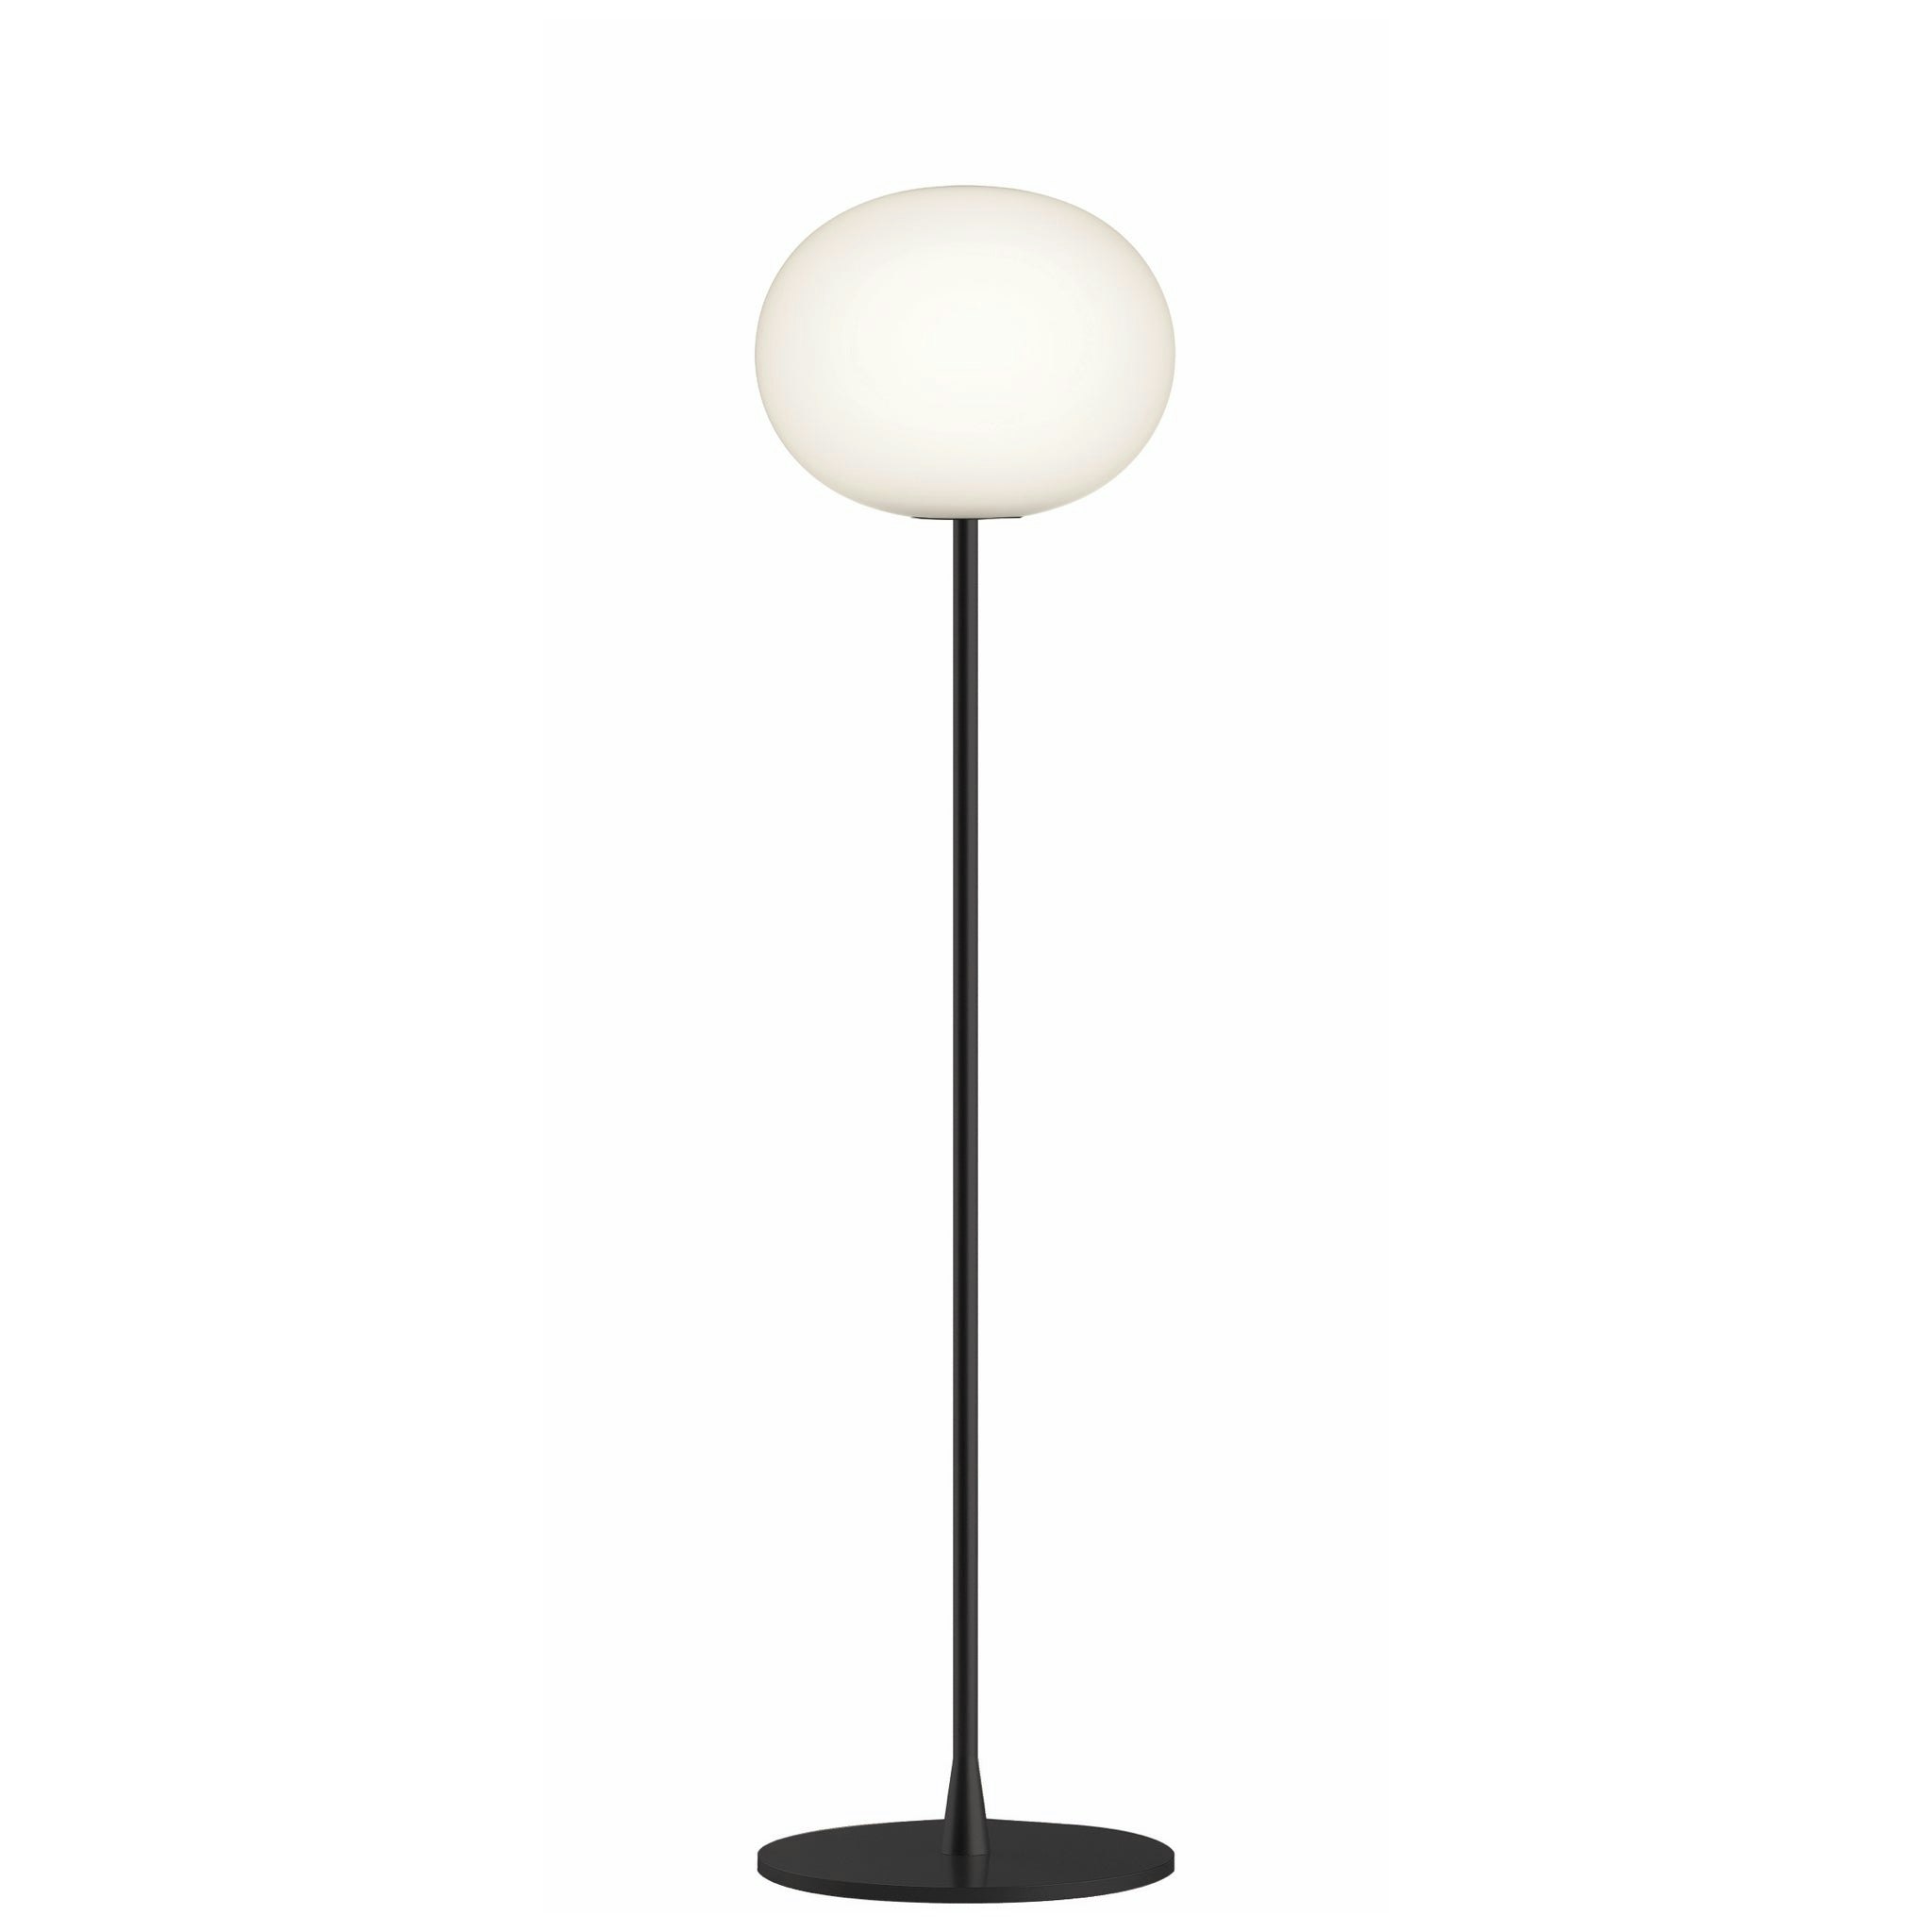 Glo Ball Matt Black Floor Lamp by Jasper Morrison for Flos